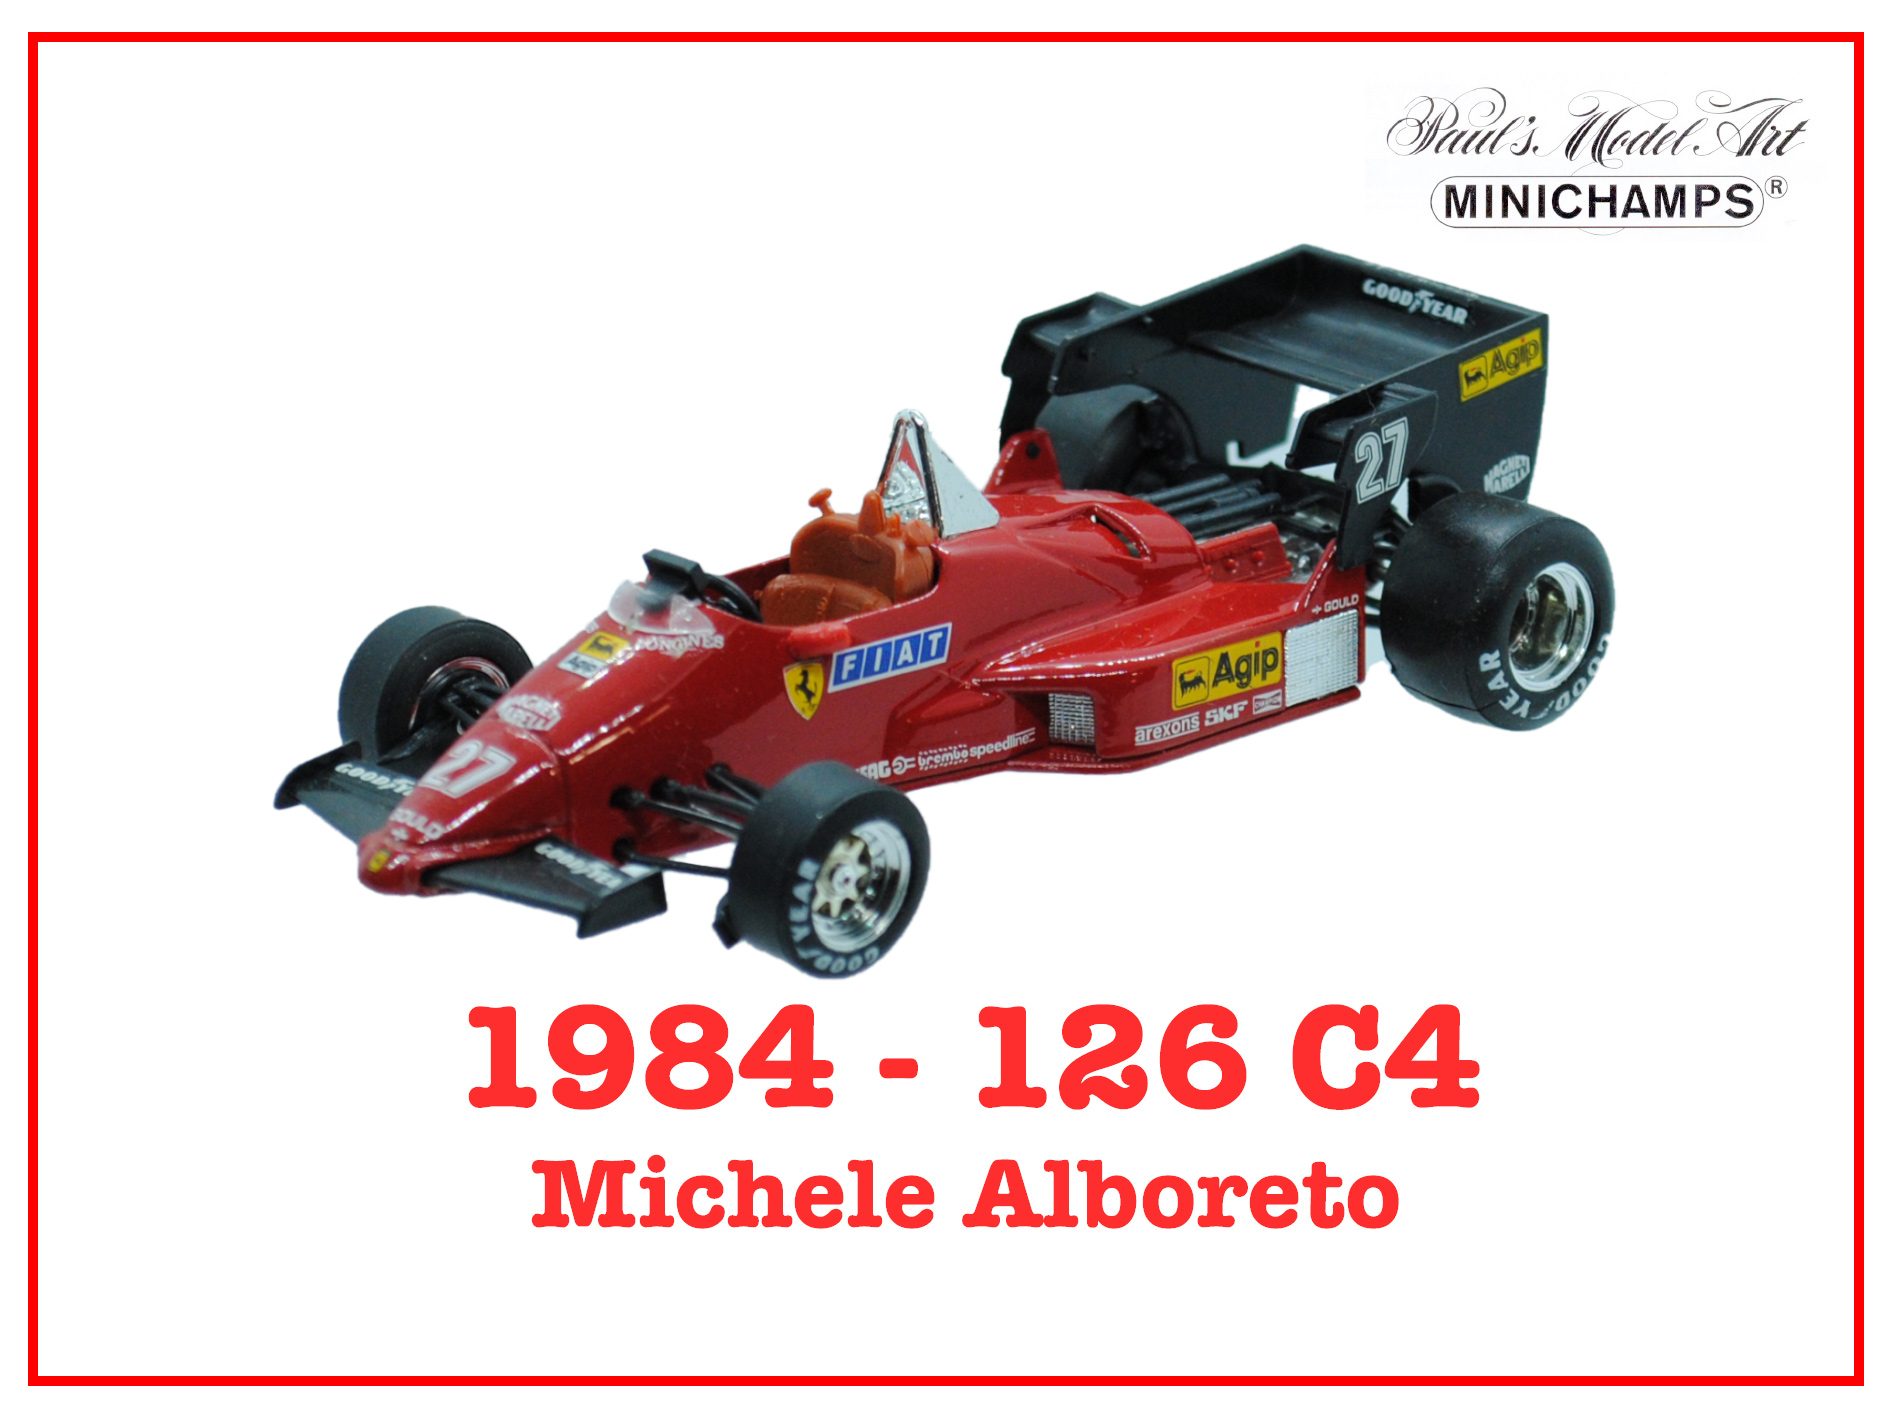 Immagine 126 C4 - Michele Alboreto